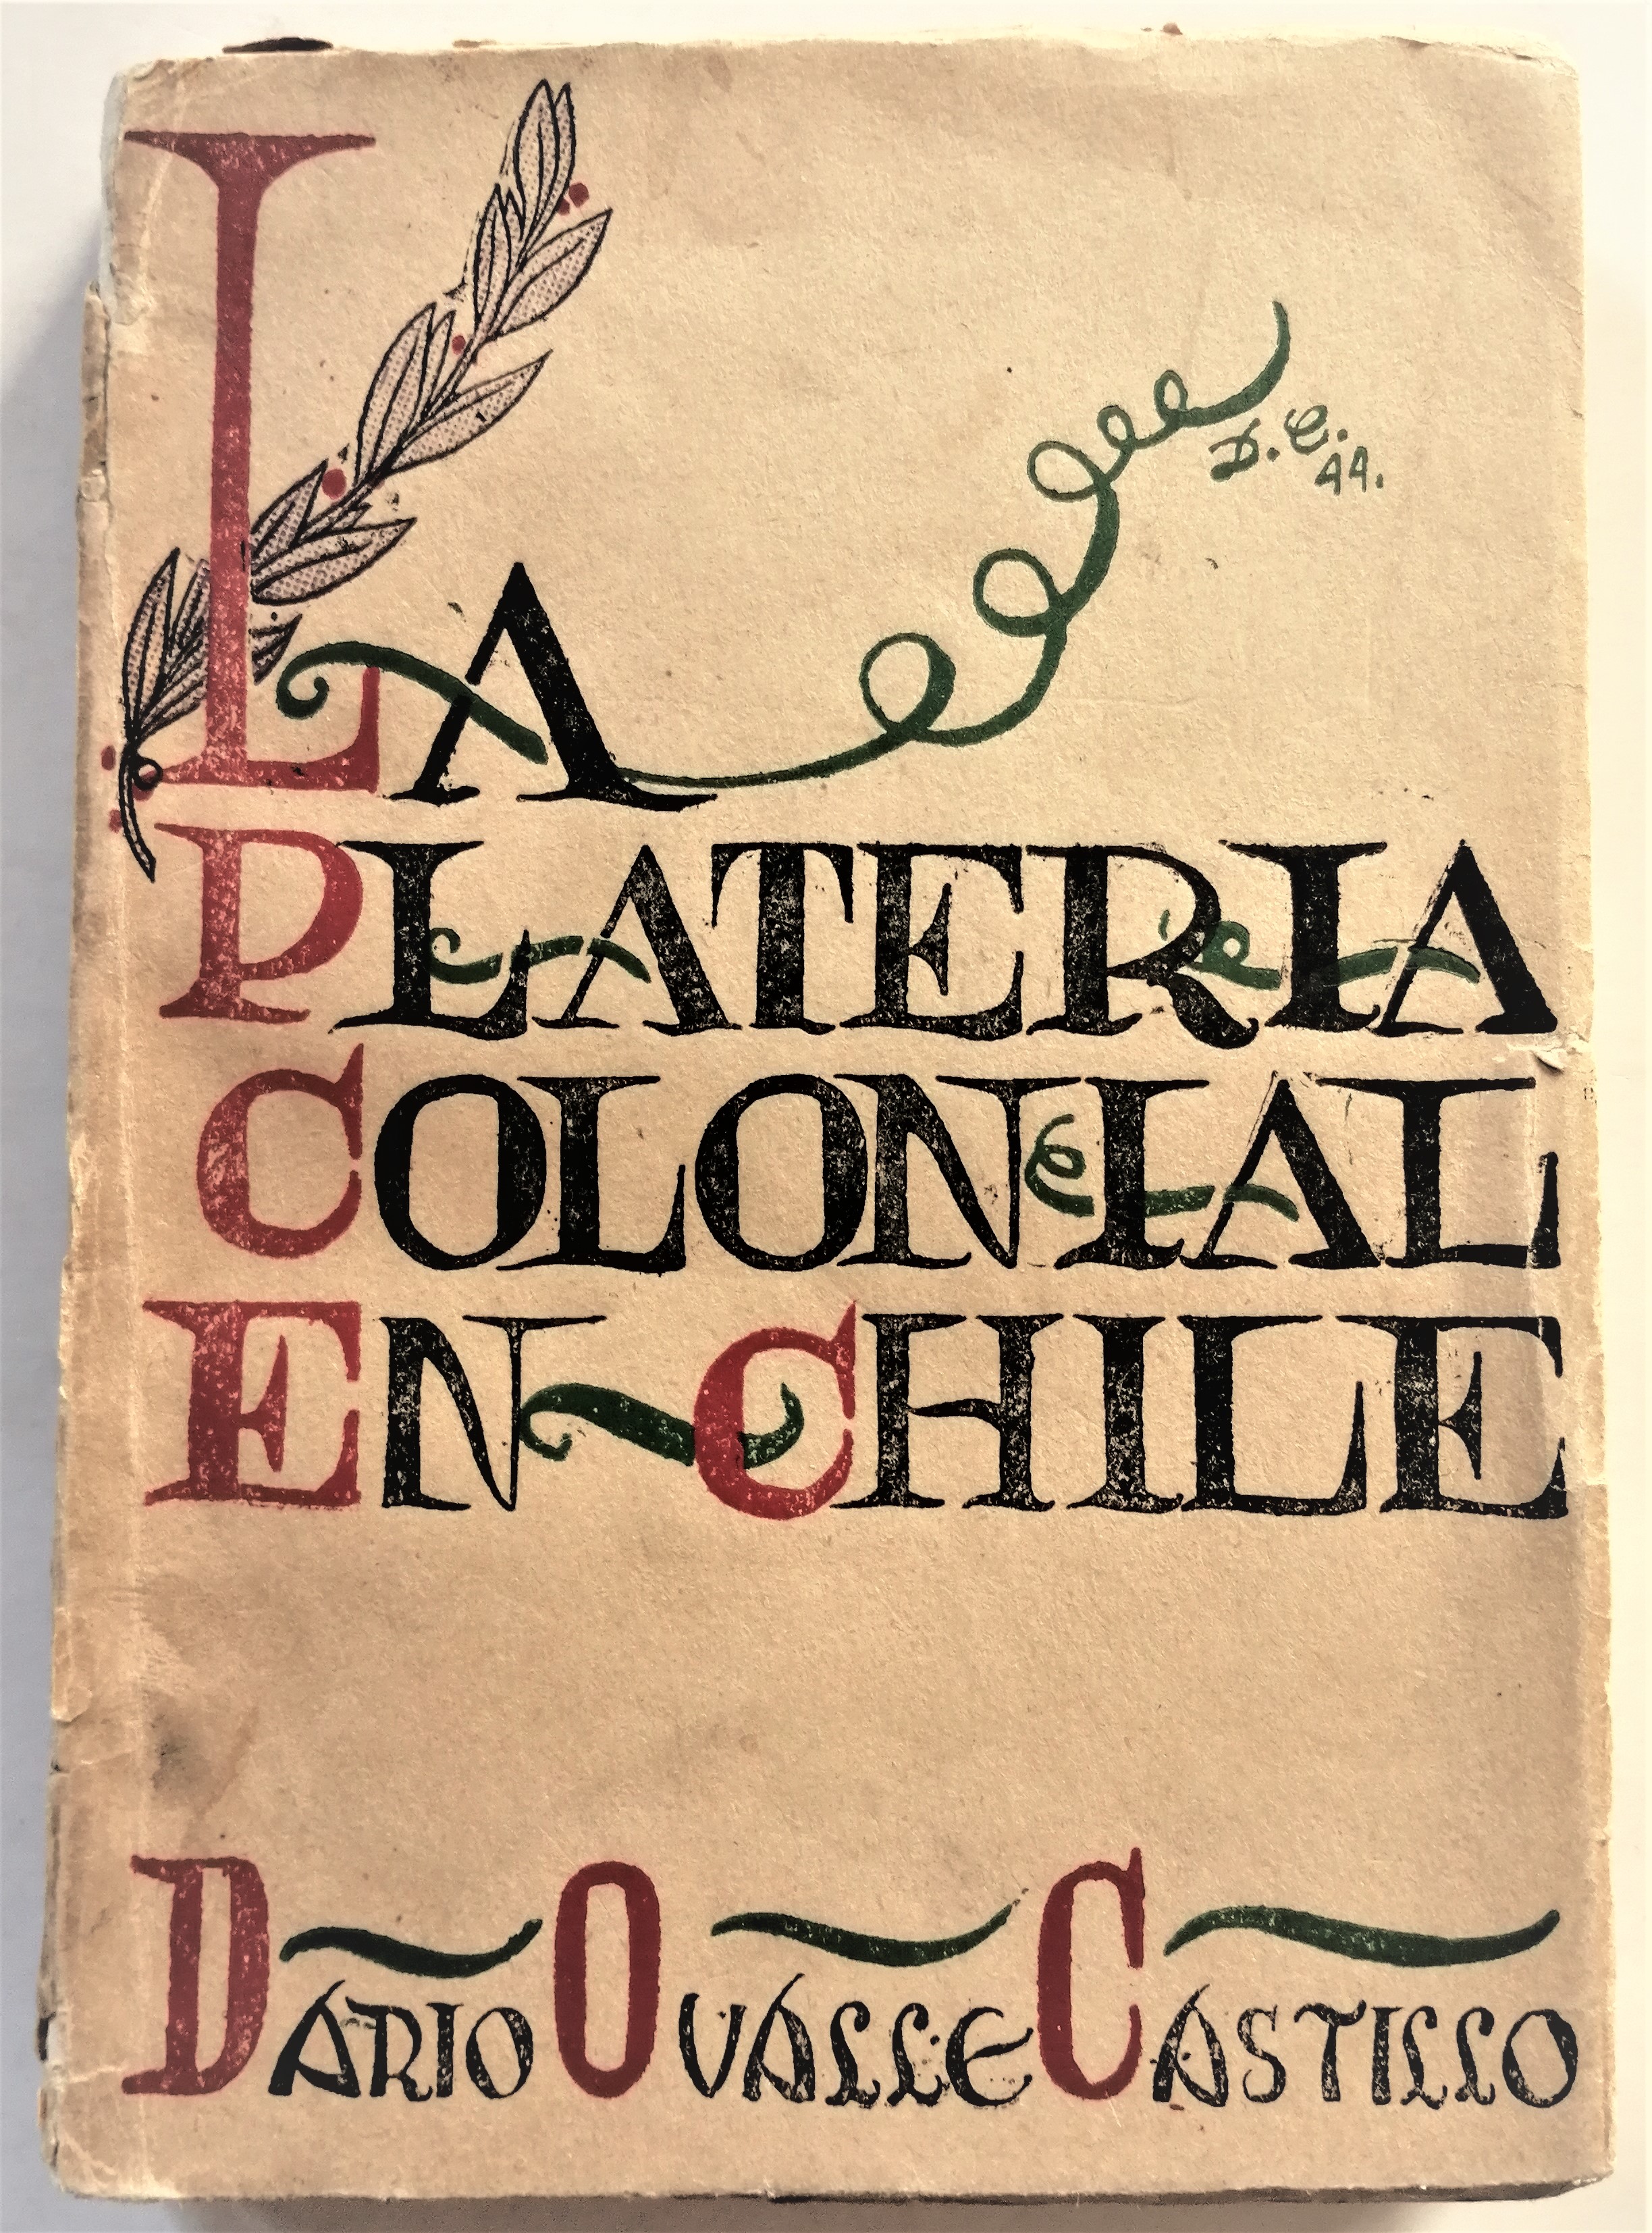 Darío Ovalle Castillo - Apuntes de platería colonial en Chile y notas sobre arte chileno